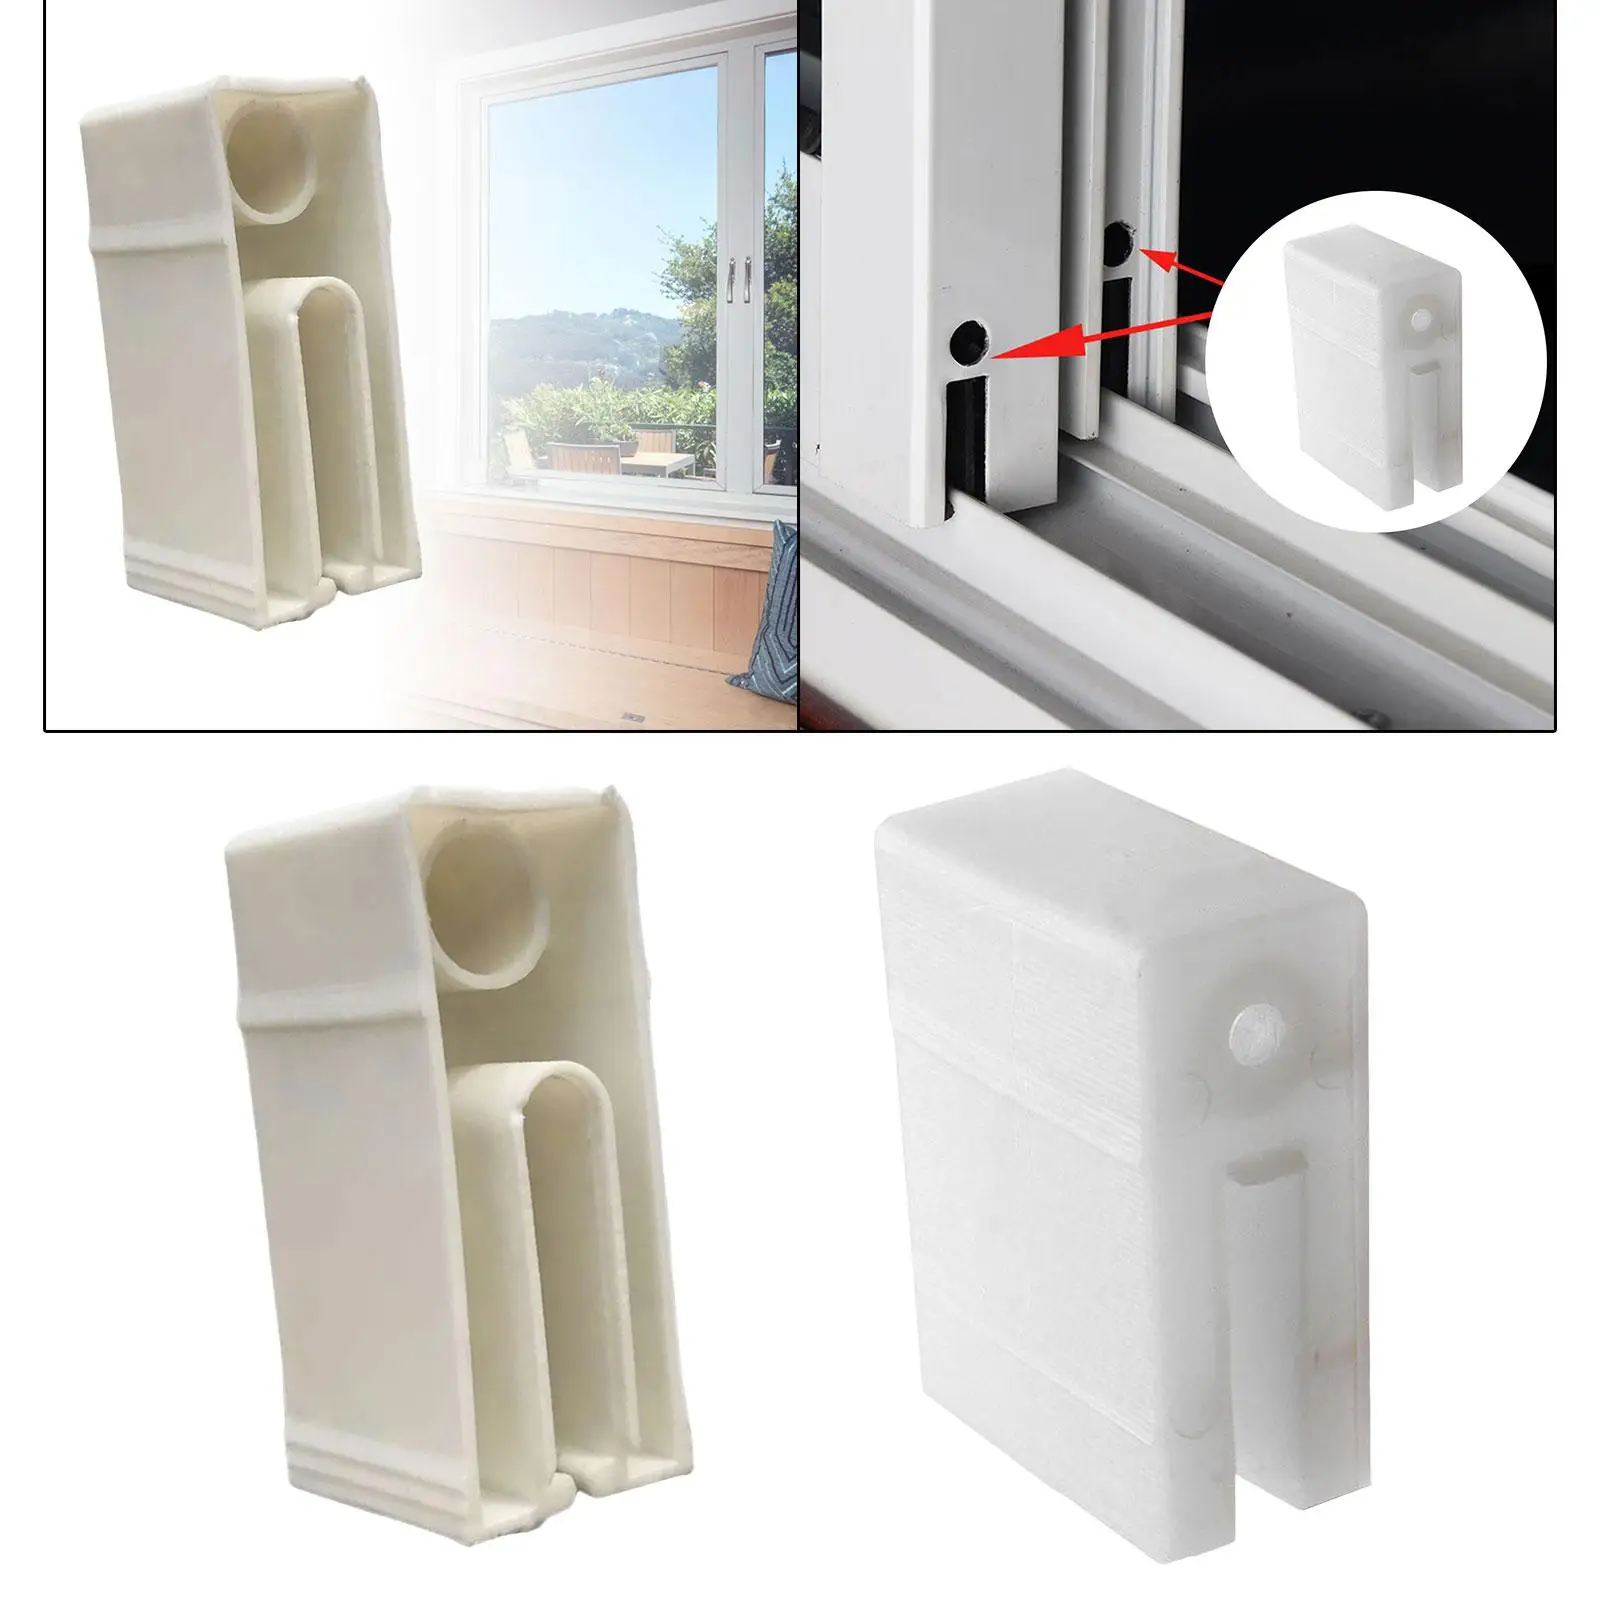 Sliding Window and Door Blocks Durable Window Accessories Door Stopper Block for Commercial Places Shops Doors Offices Household